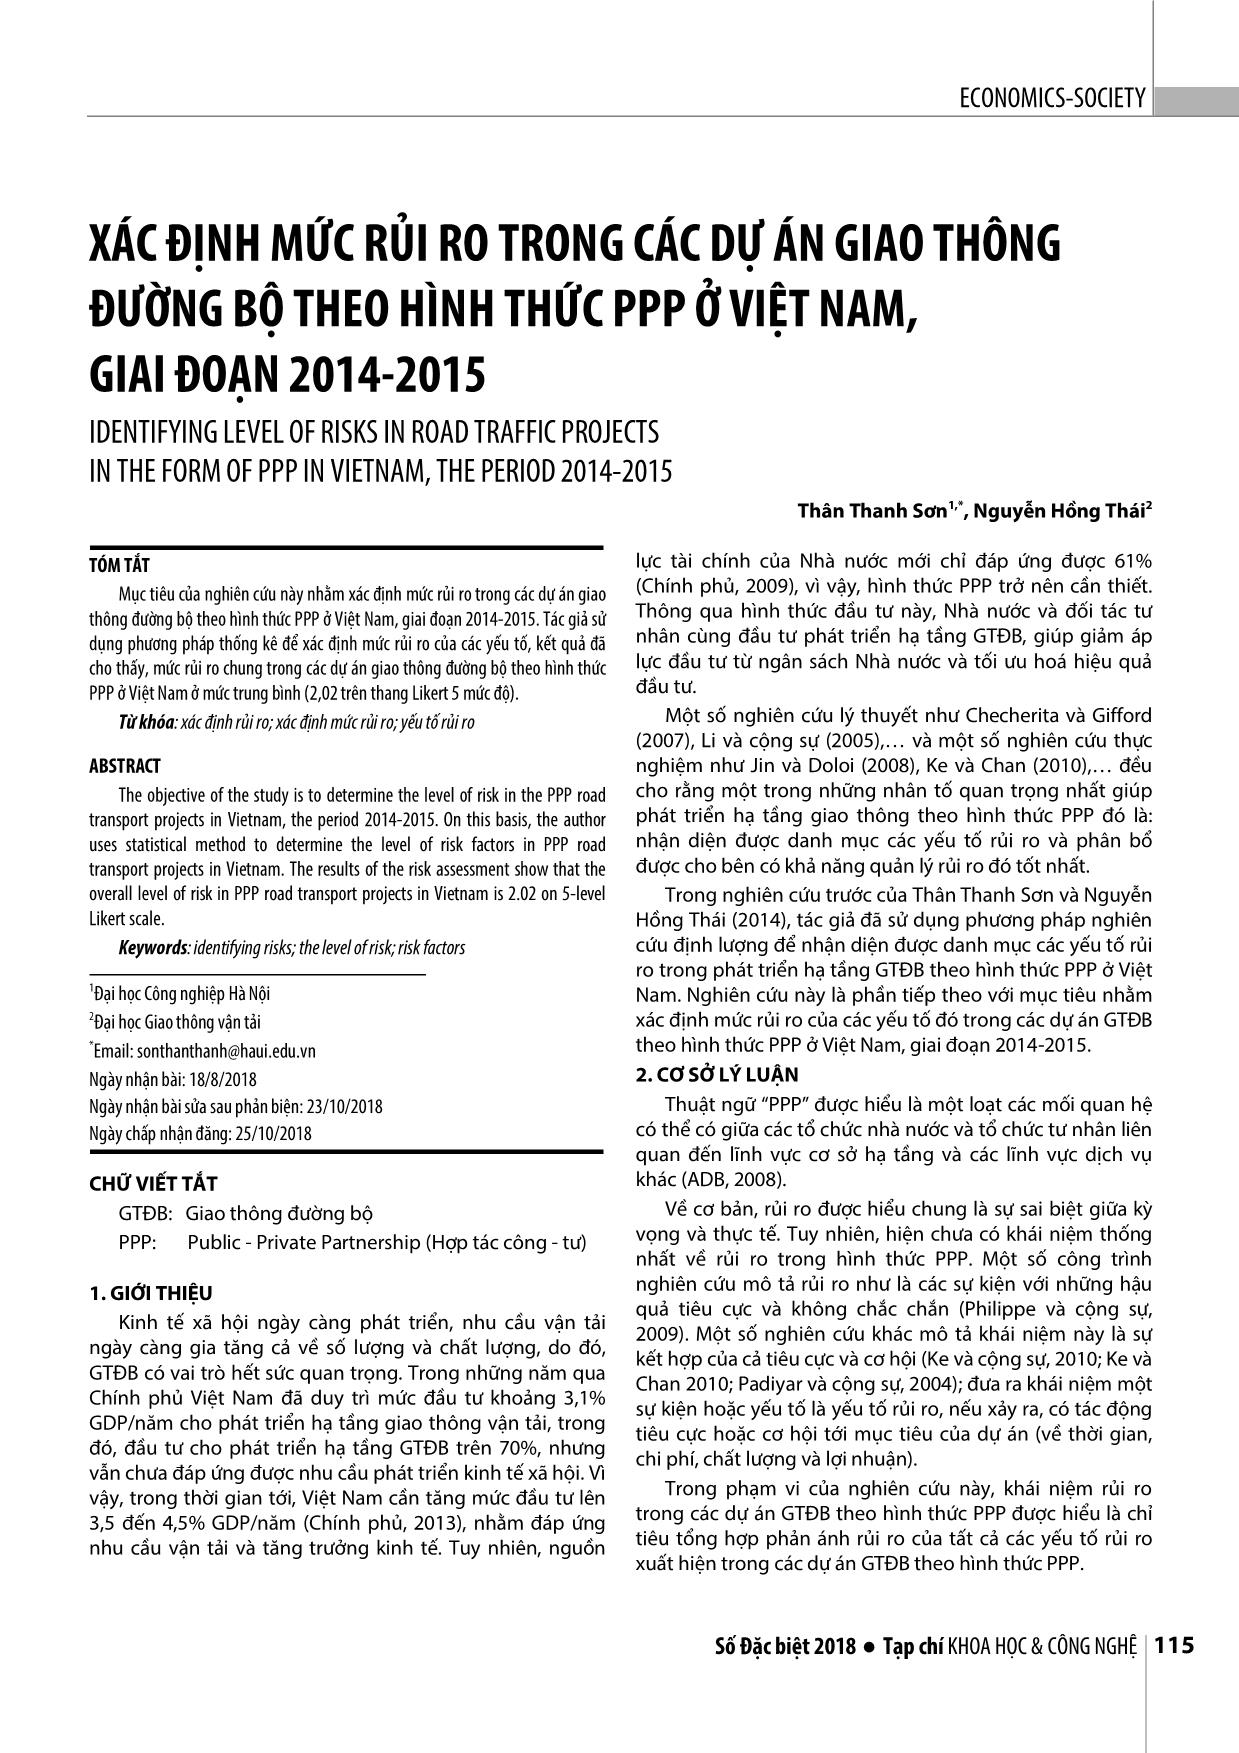 Xác định mức rủi ro trong các dự án giao thông đường bộ theo hình thức PPP ở Việt Nam, giai đoạn 2014-2015 trang 1